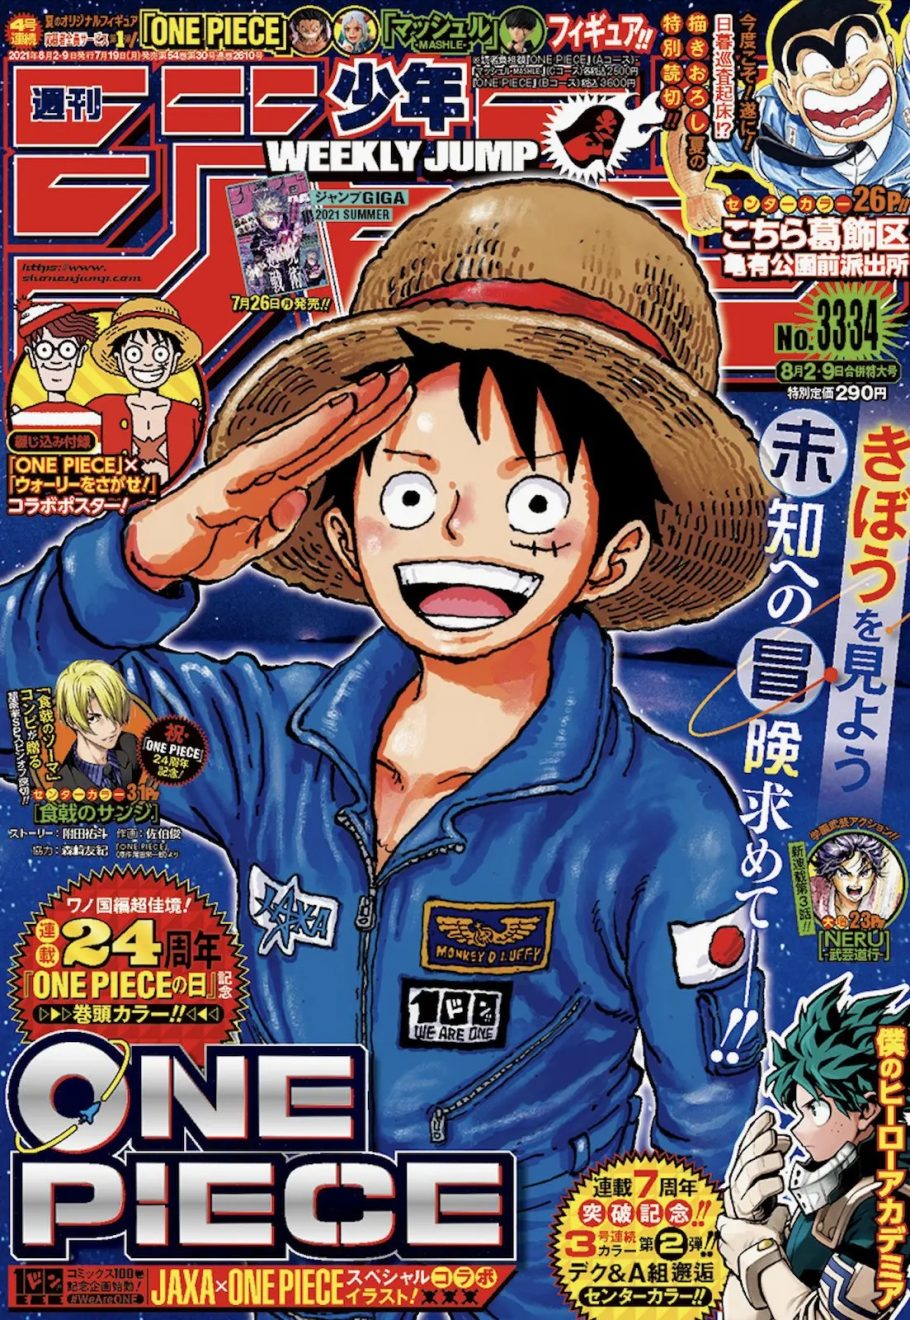 Capítulo 1009 de One Piece: Spoilers e data de lançamento - Manga Livre RS